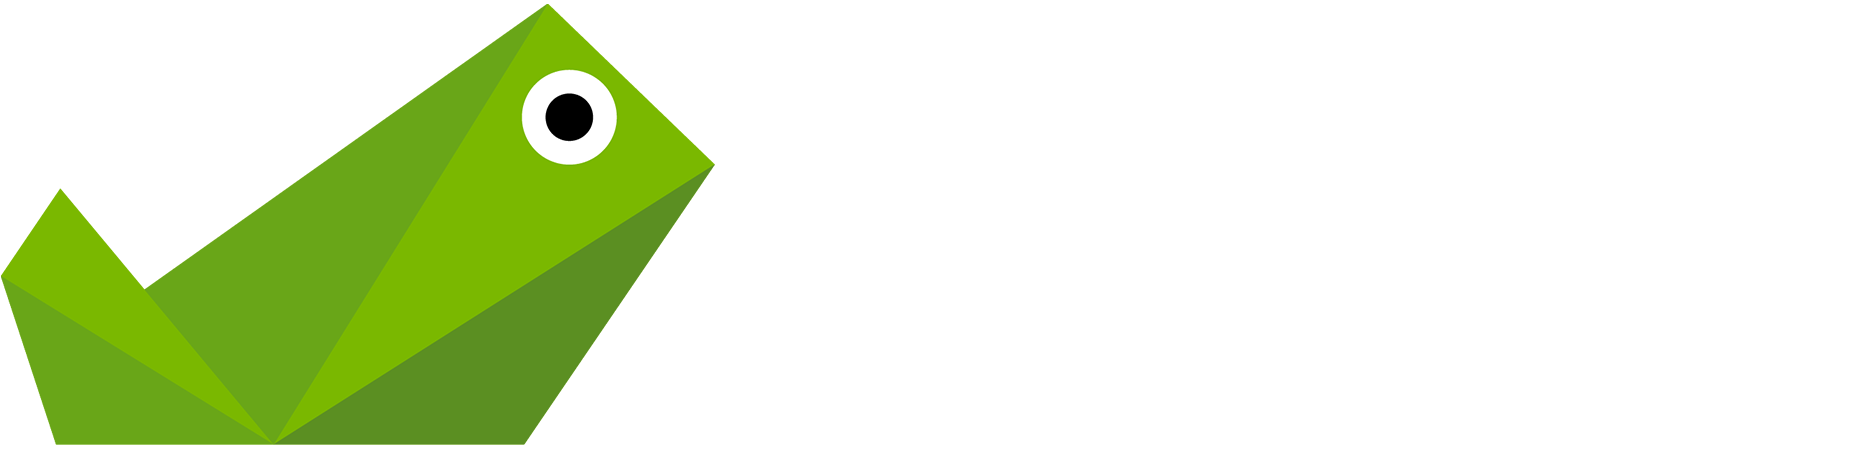 SAPO logo